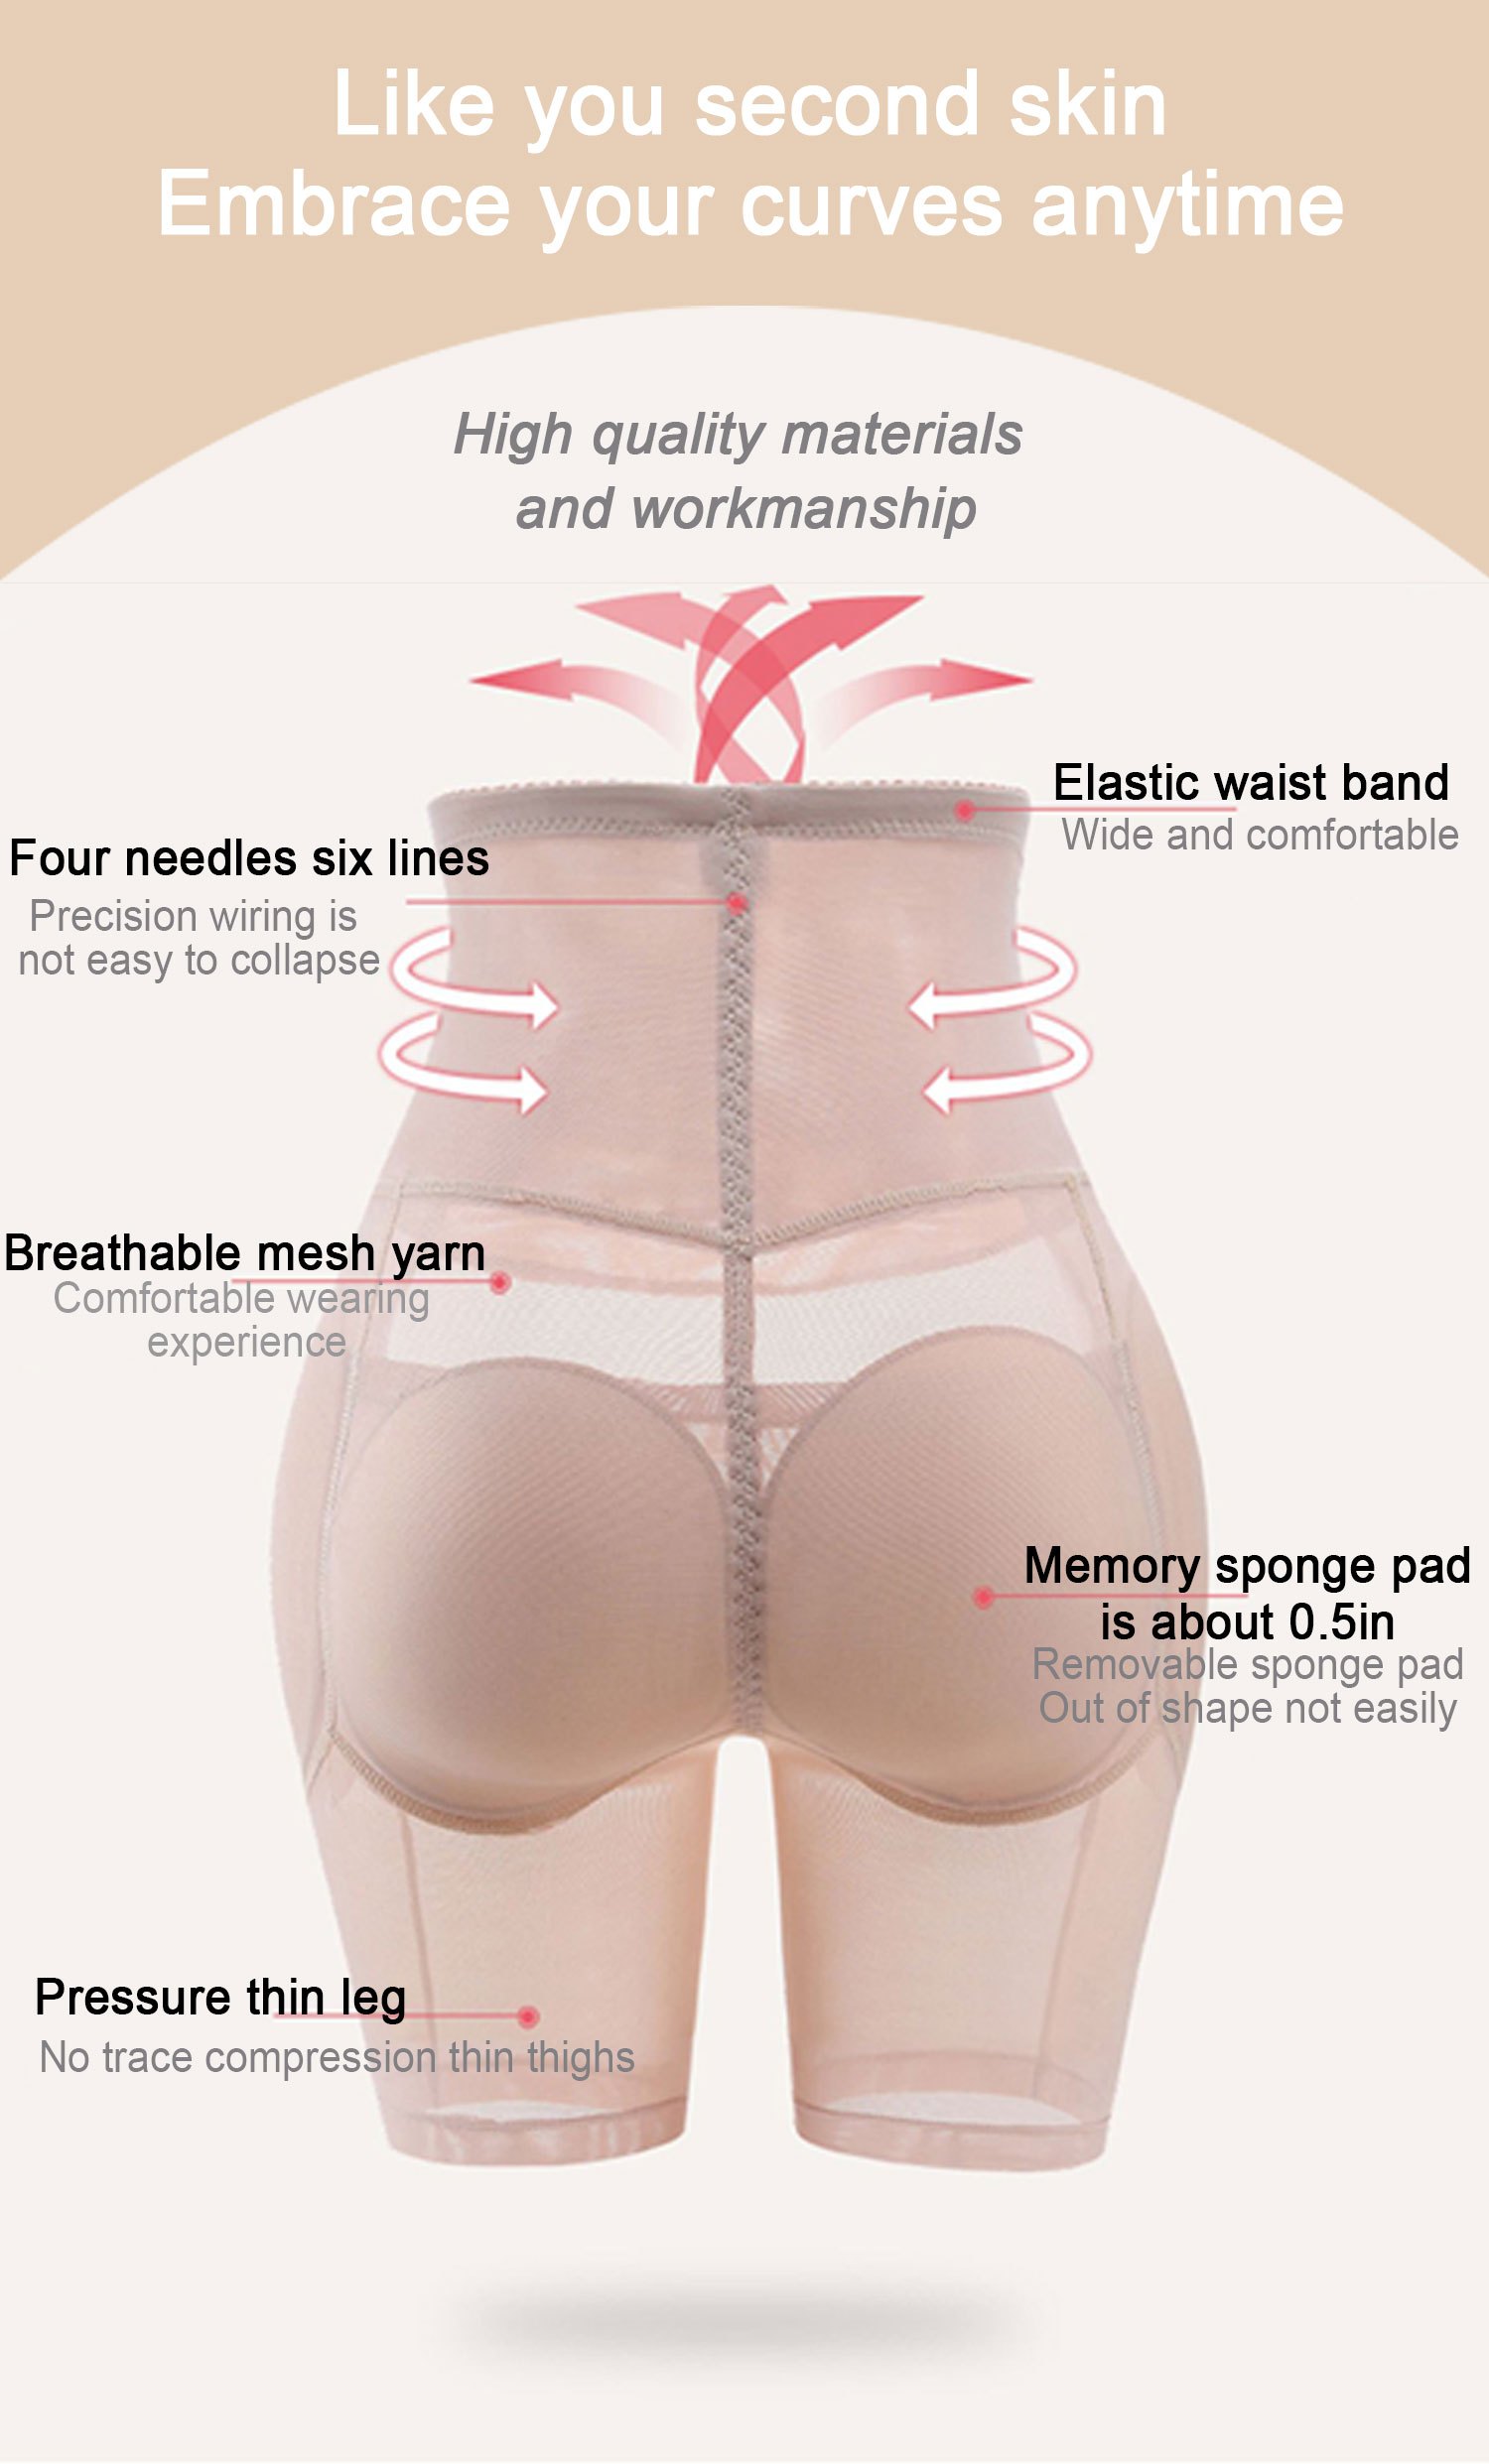 High Waist Padded Hips Seamless Panty Butt Lifter Enhancer Memory